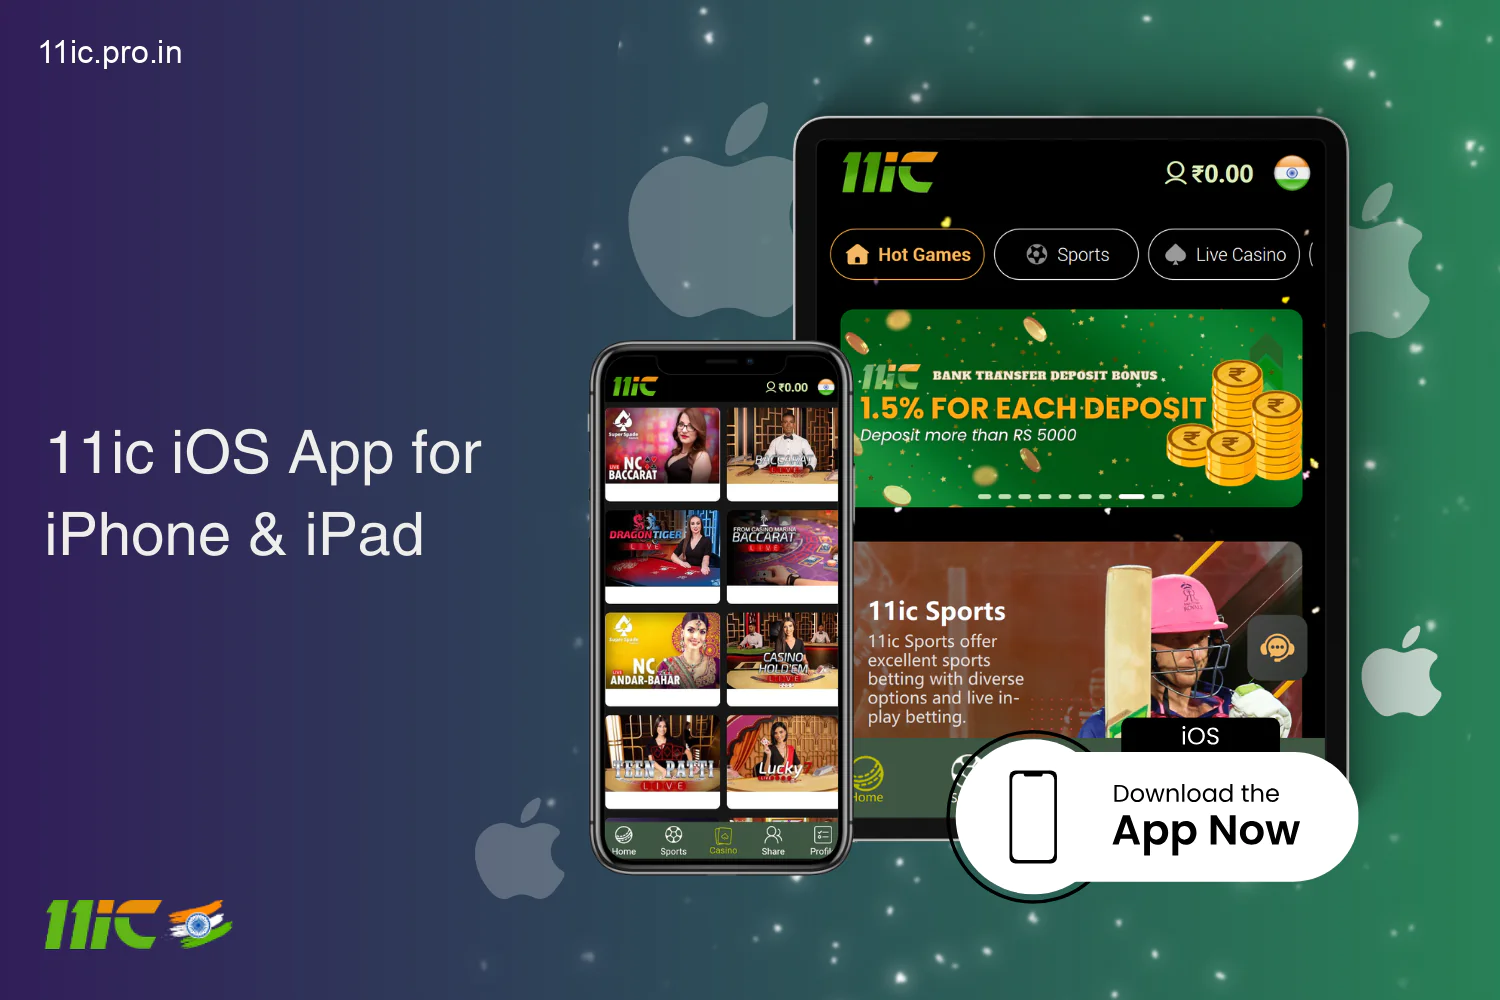 11ic मोबाइल ऐप आईफोन और आईपैड के लिए उपलब्ध है